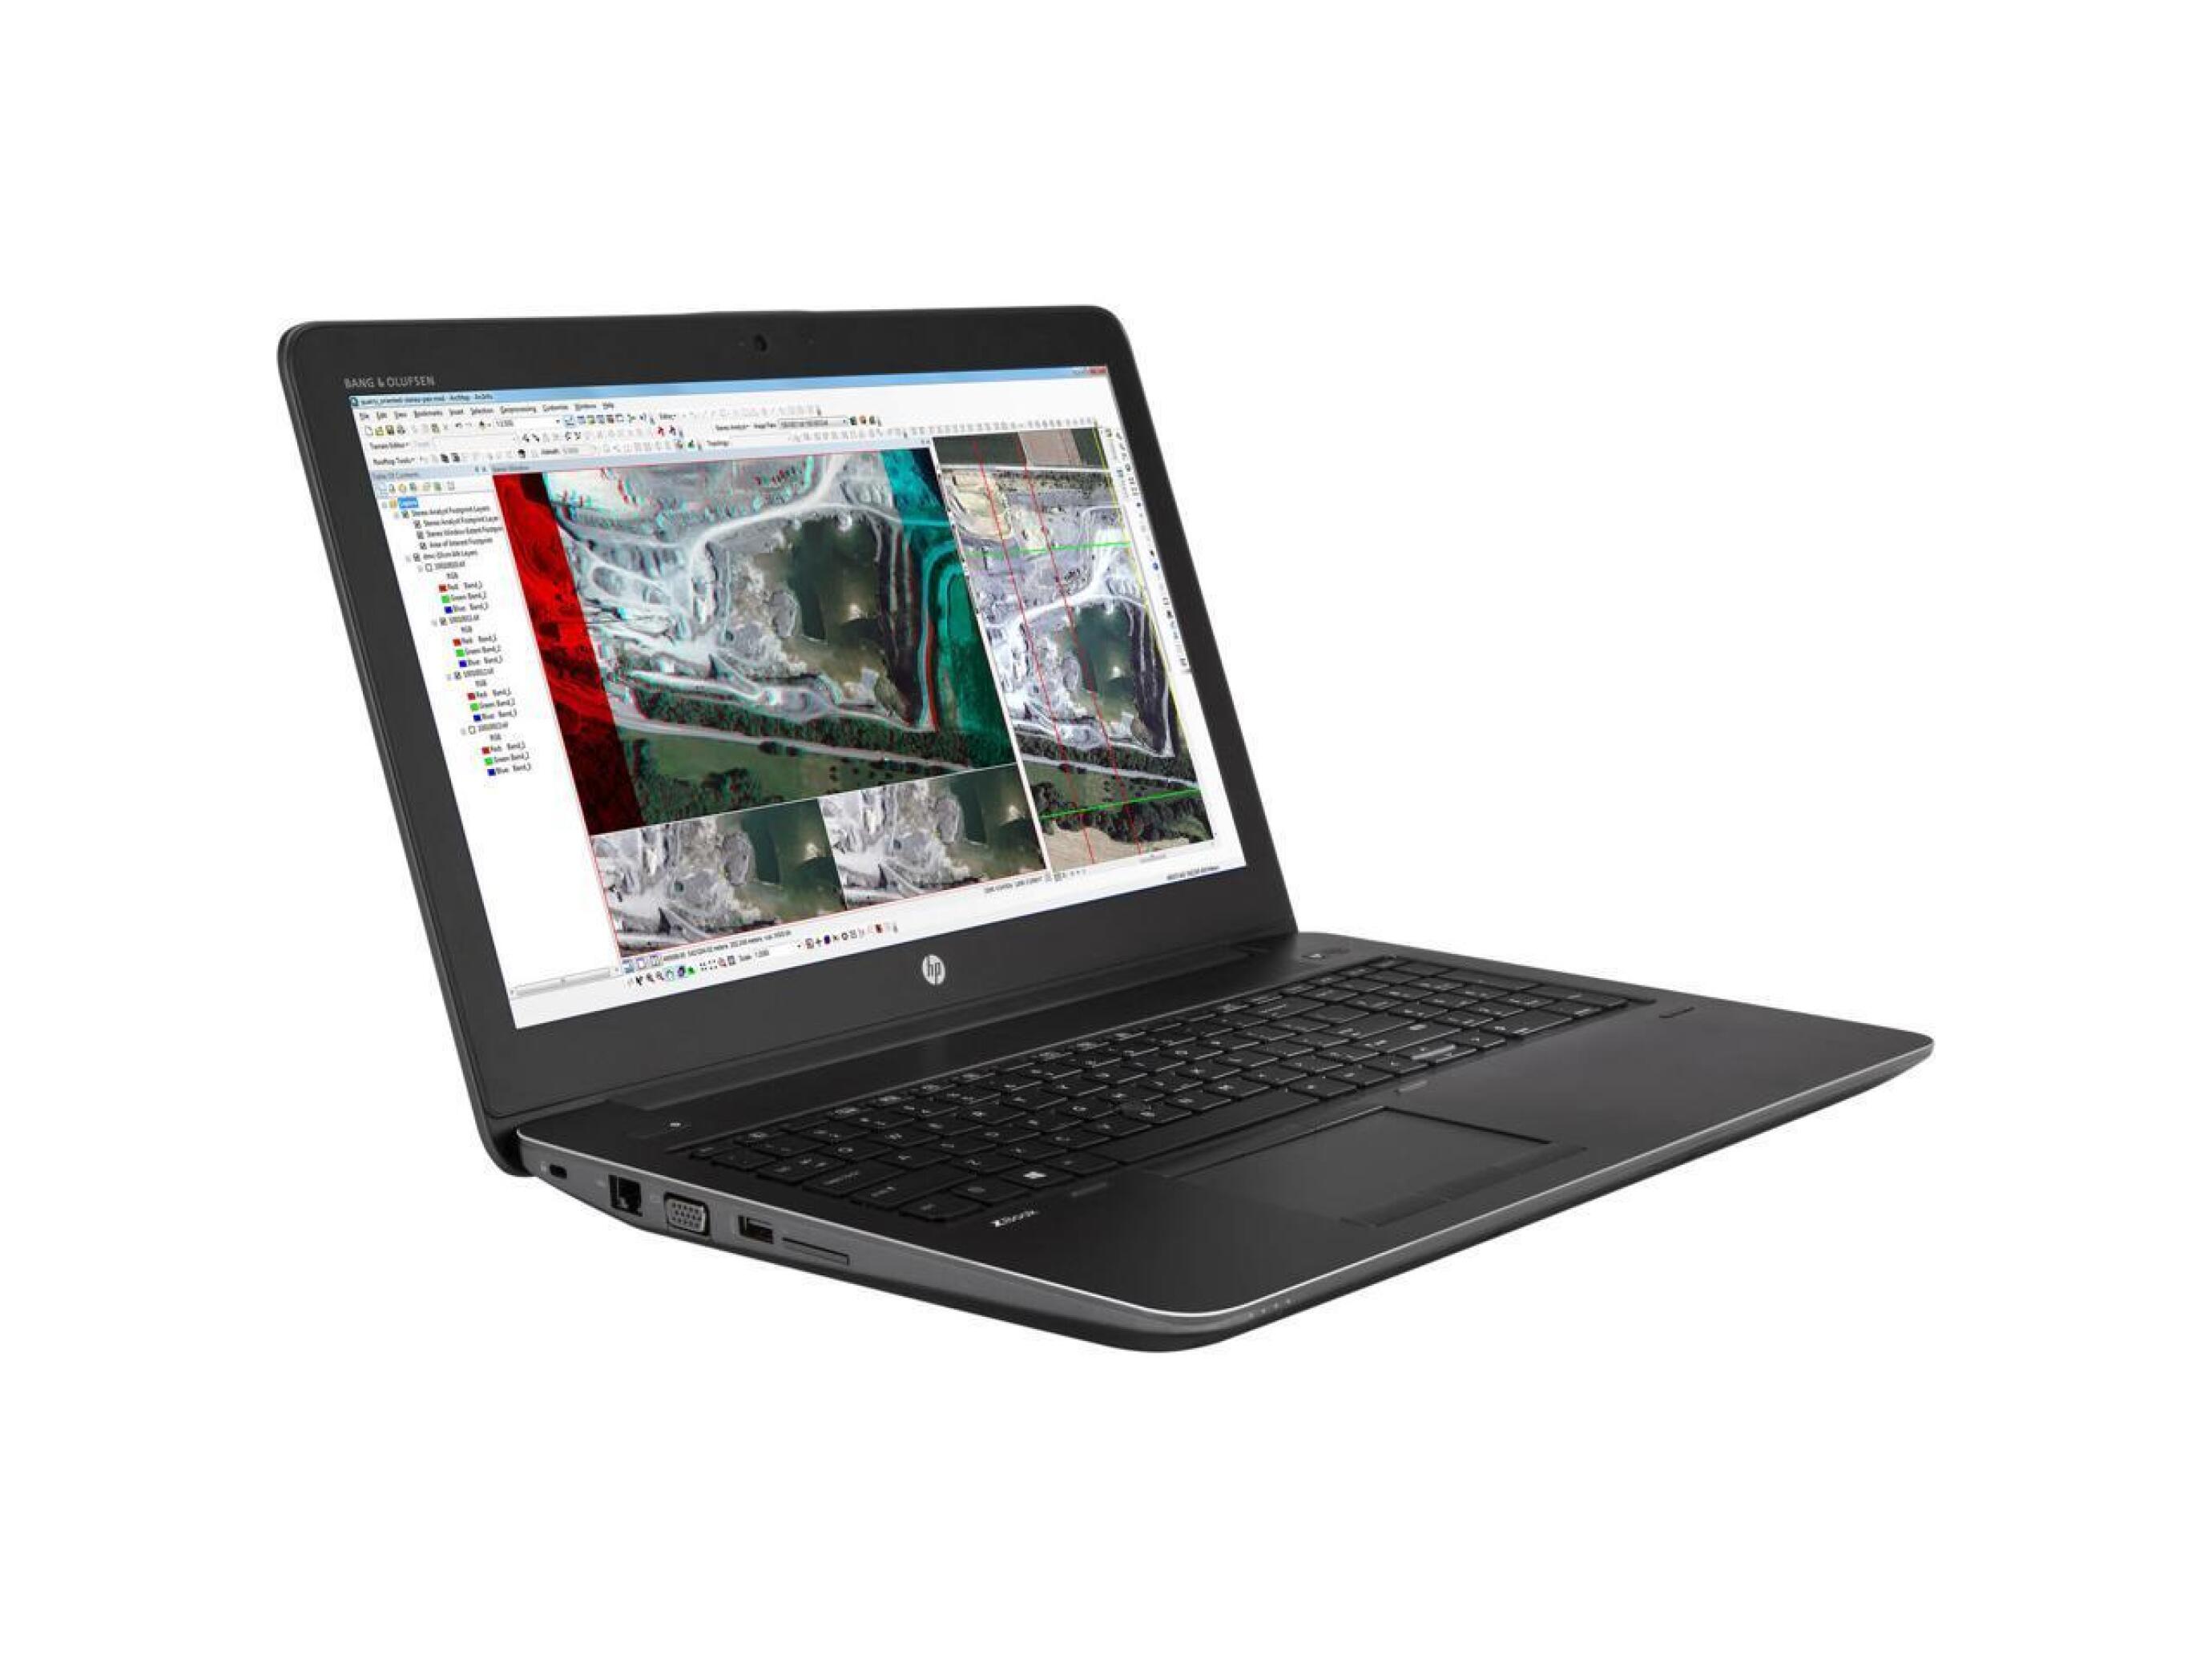  لپ تاپ اچ پی مدل ZBOOK 15 G3 پردازنده CORE I7-6700HQ با گرافیک 2 گیگابایت 